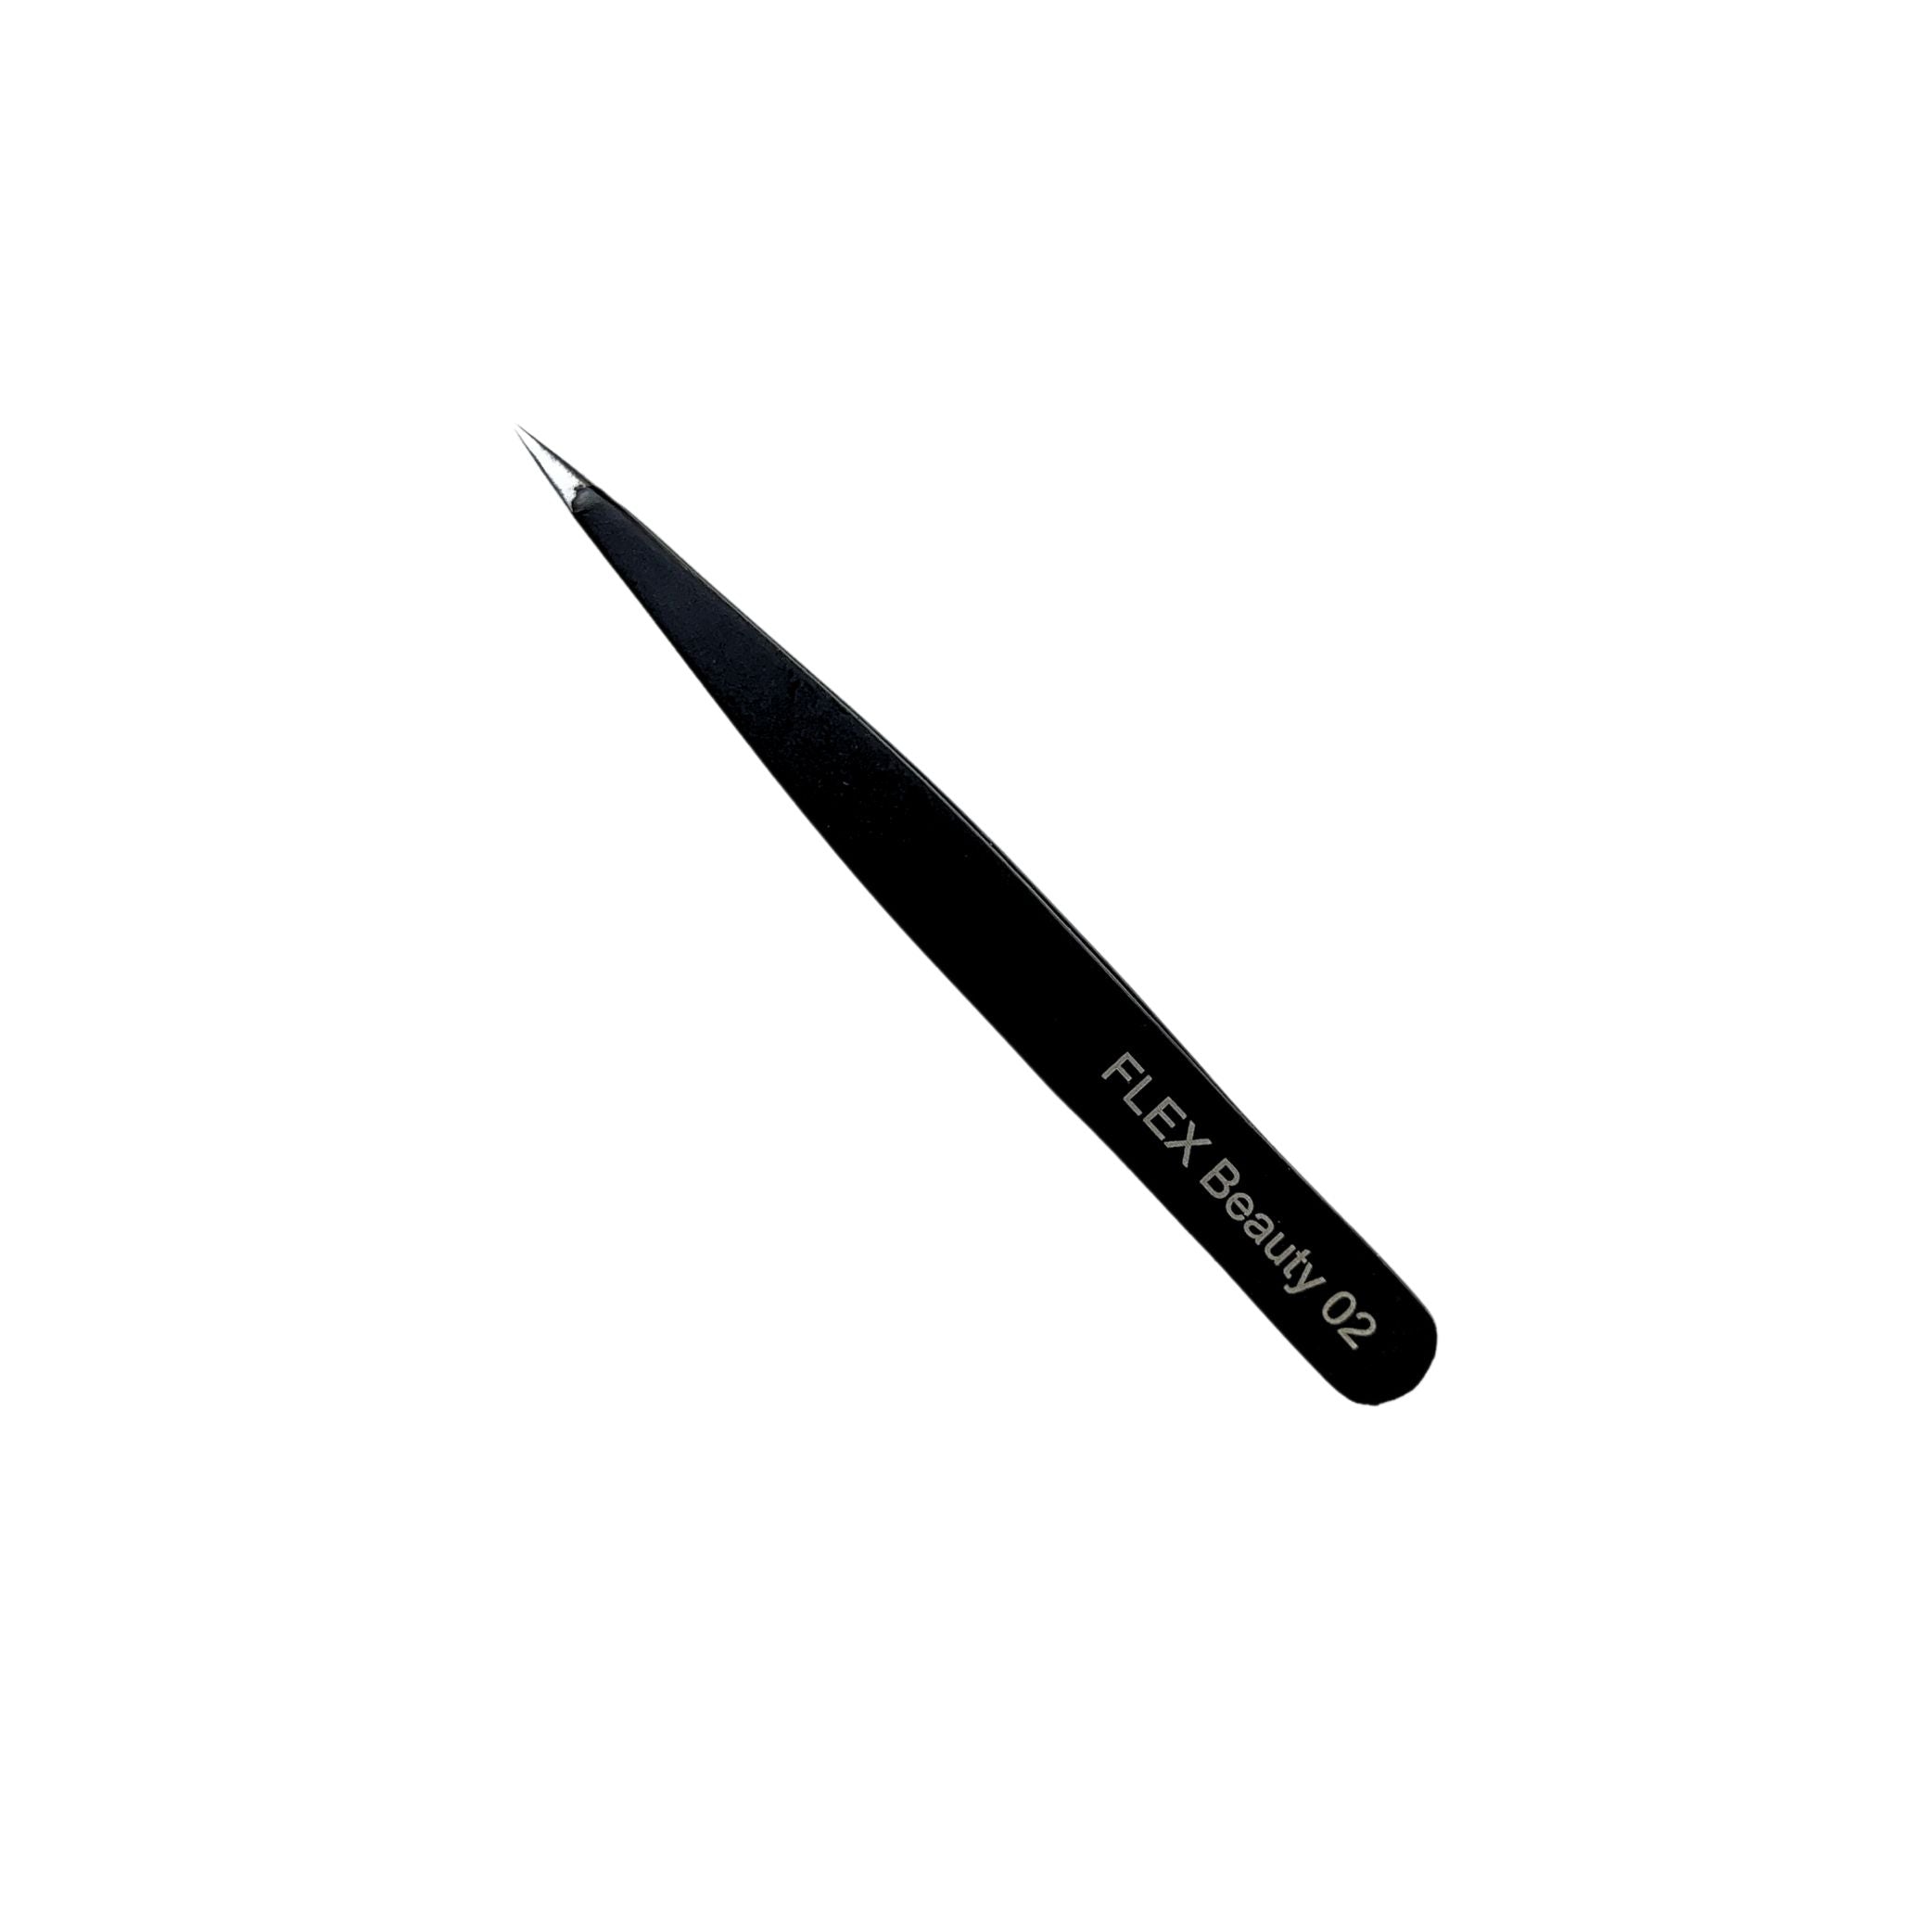 FLEX Beauty Eyebrow Tweezers - 02 Sharp